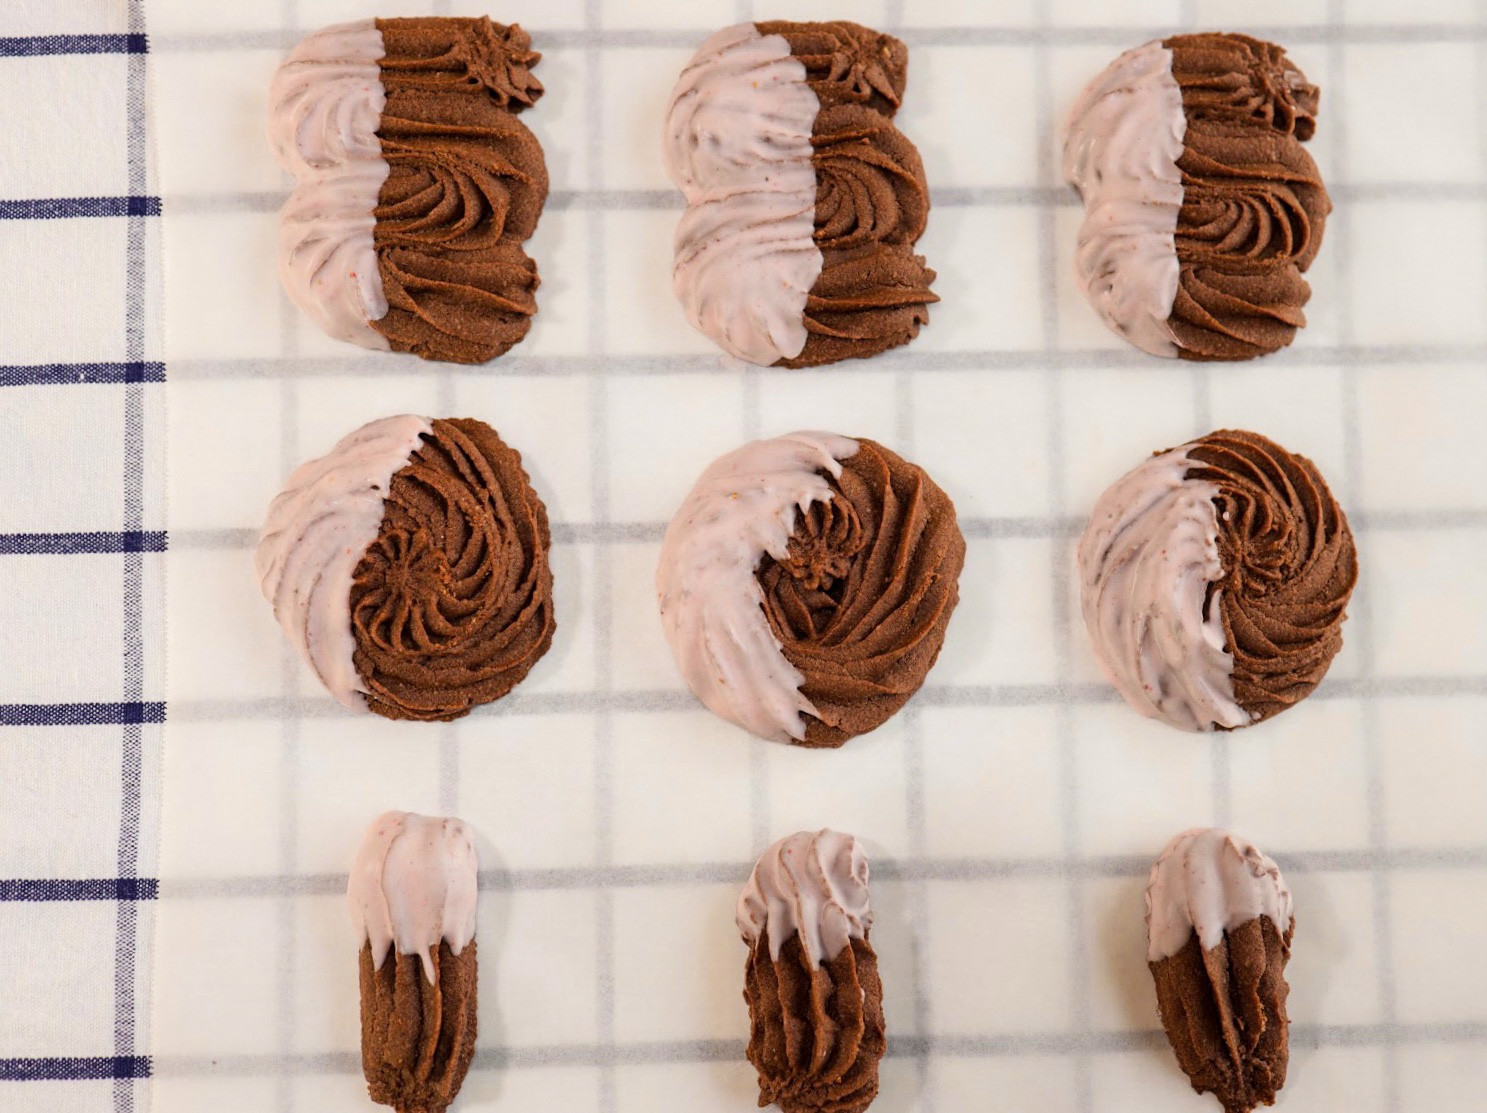 維也納巧克力酥餅 巧克力擠花餅乾by Daruma 達磨小廚房 愛料理